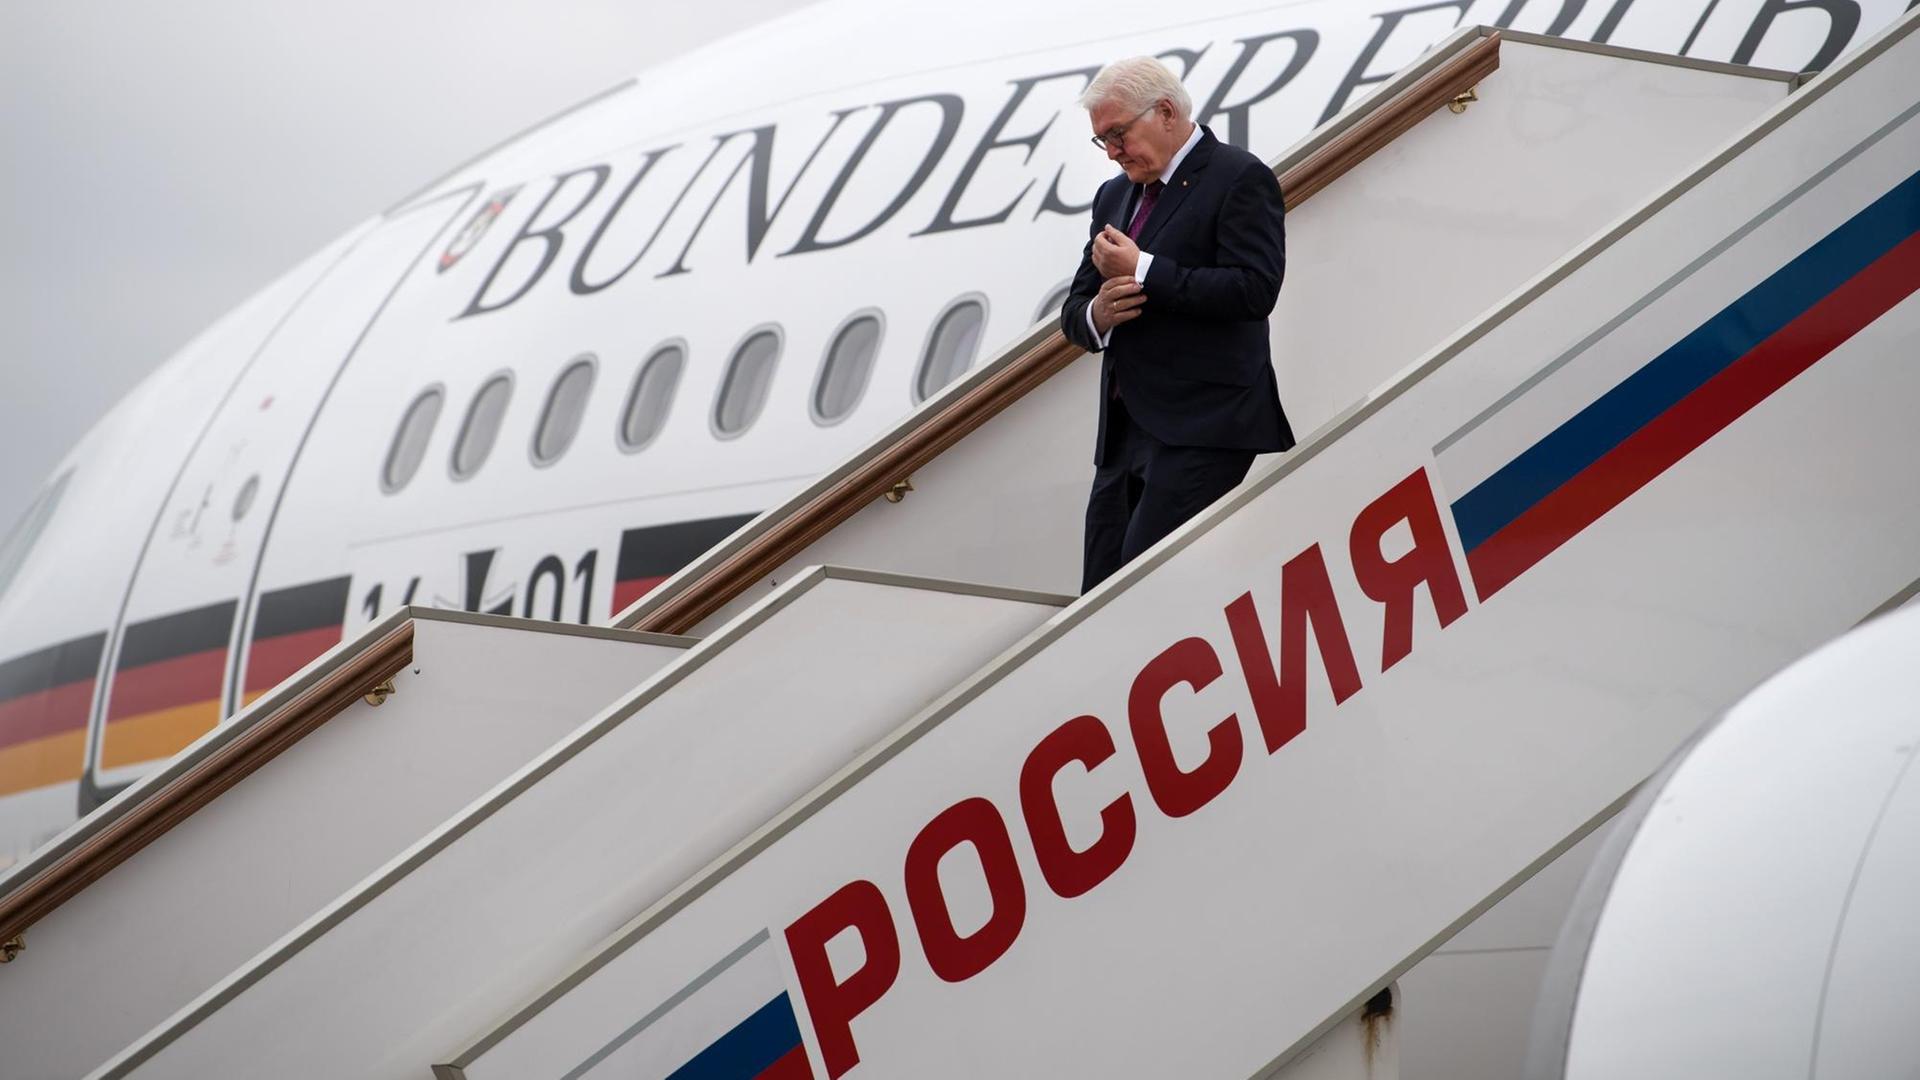 Bundespräsident Frank-Walter Steinmeier kommt am 25.10.2017 auf dem Flughafen in Moskau (Russland) an. Steinmeier wird bei seinem eintägigen Arbeitsbesuch in der Russischen Föderation unter anderem Präsident Putin und Menschenrechtler treffen.